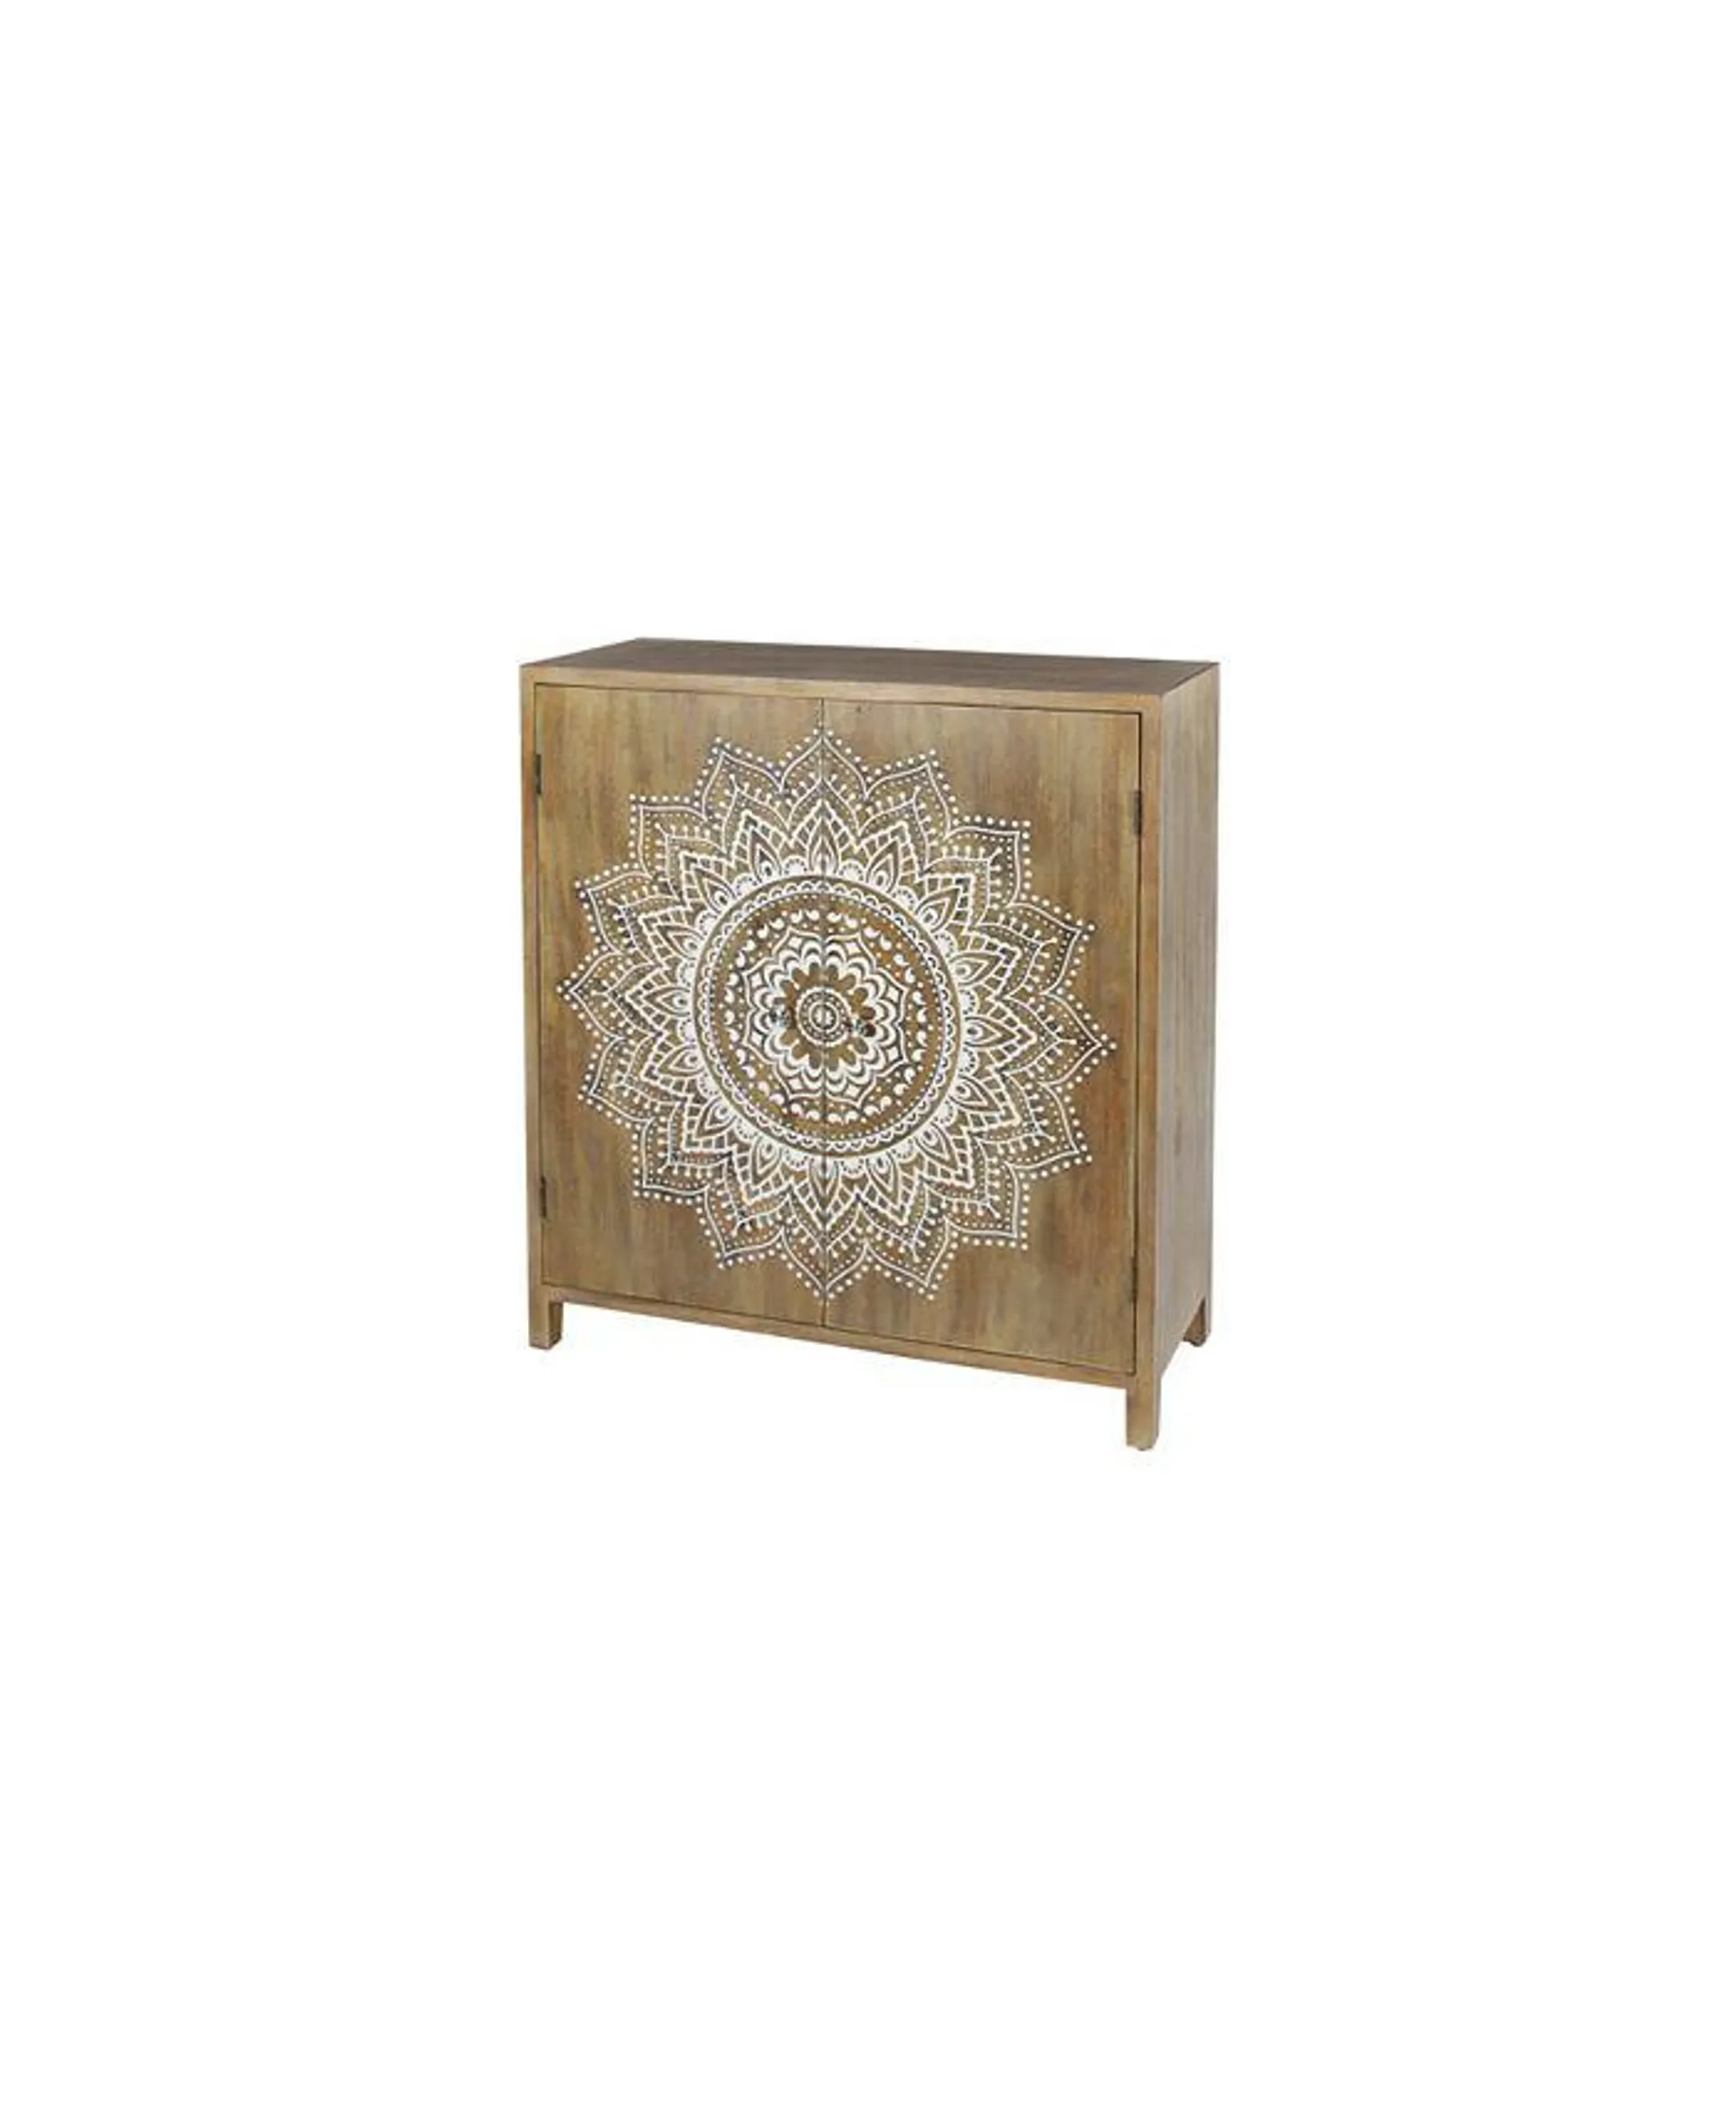 Wood Boho Style Cabinet